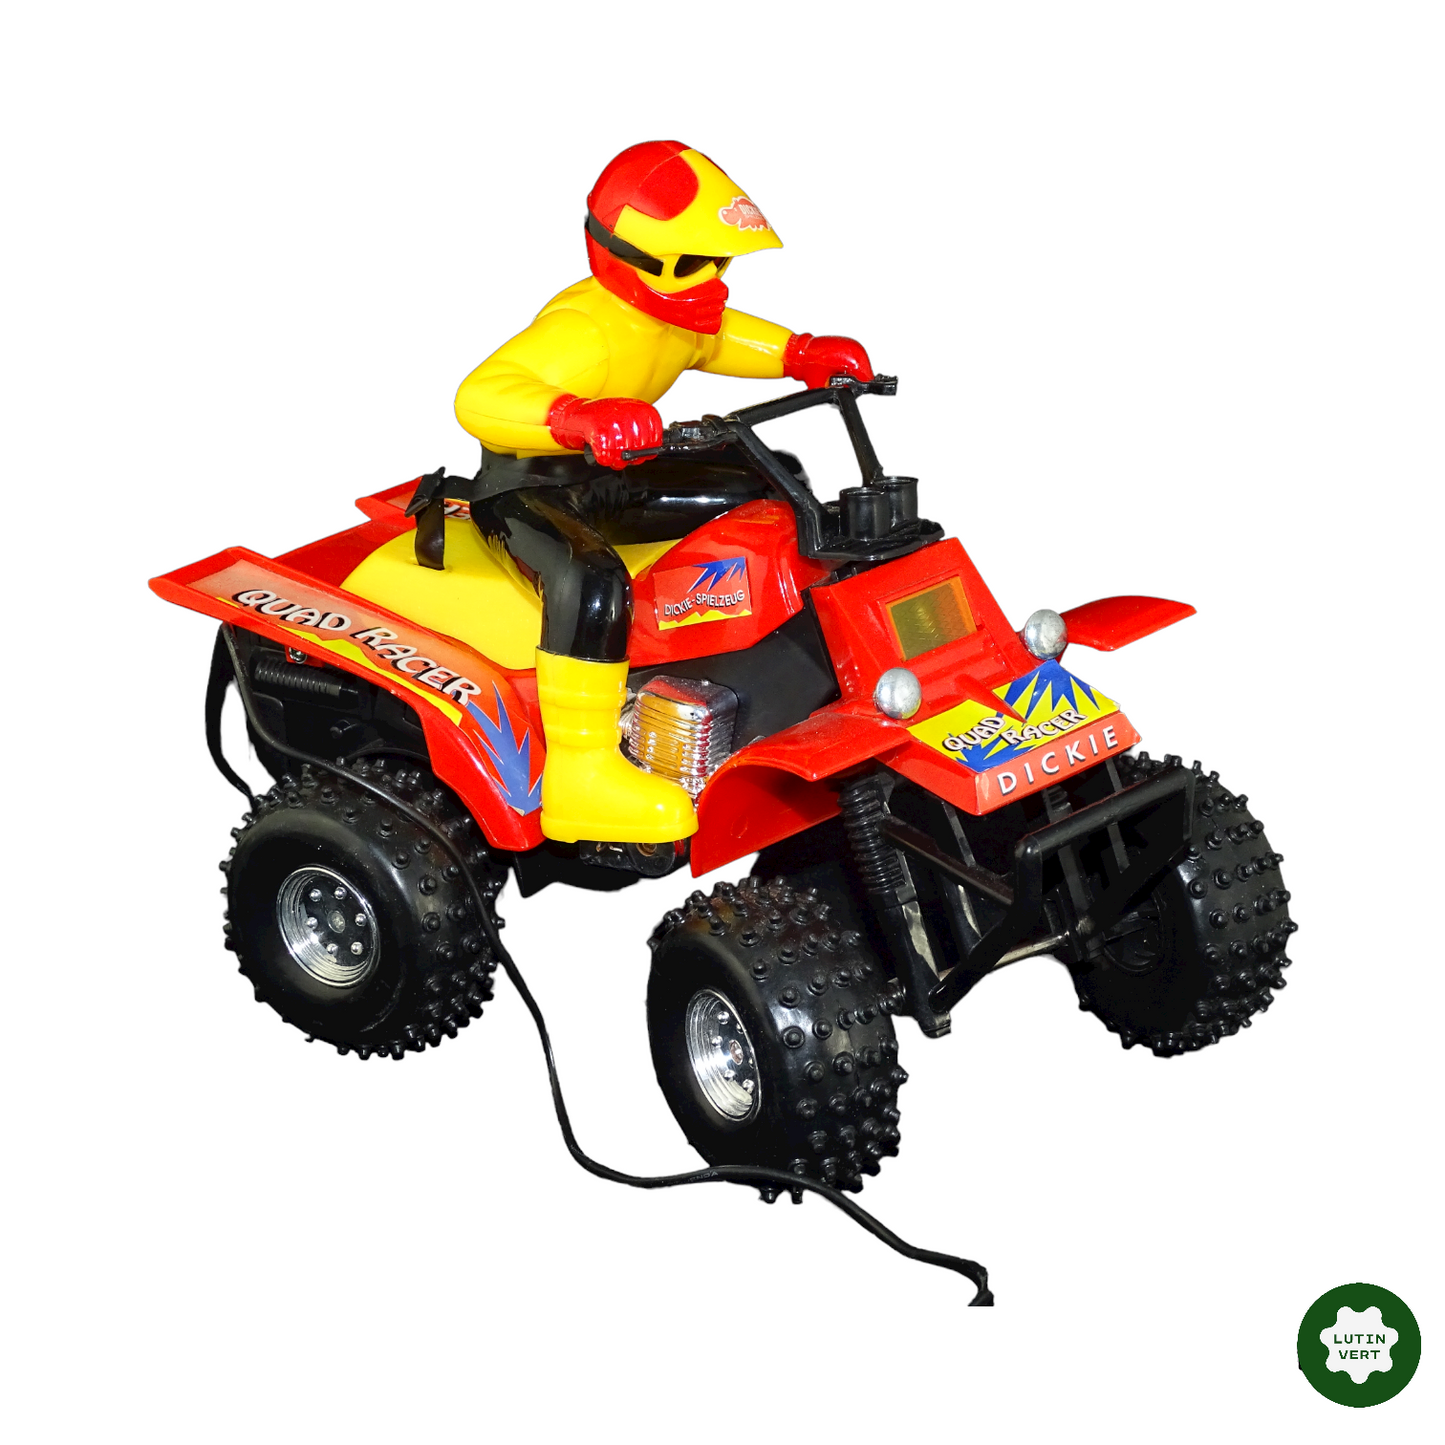 Quad Racer télécommandé d'occasion - Dickie Toys - Lutin Vert